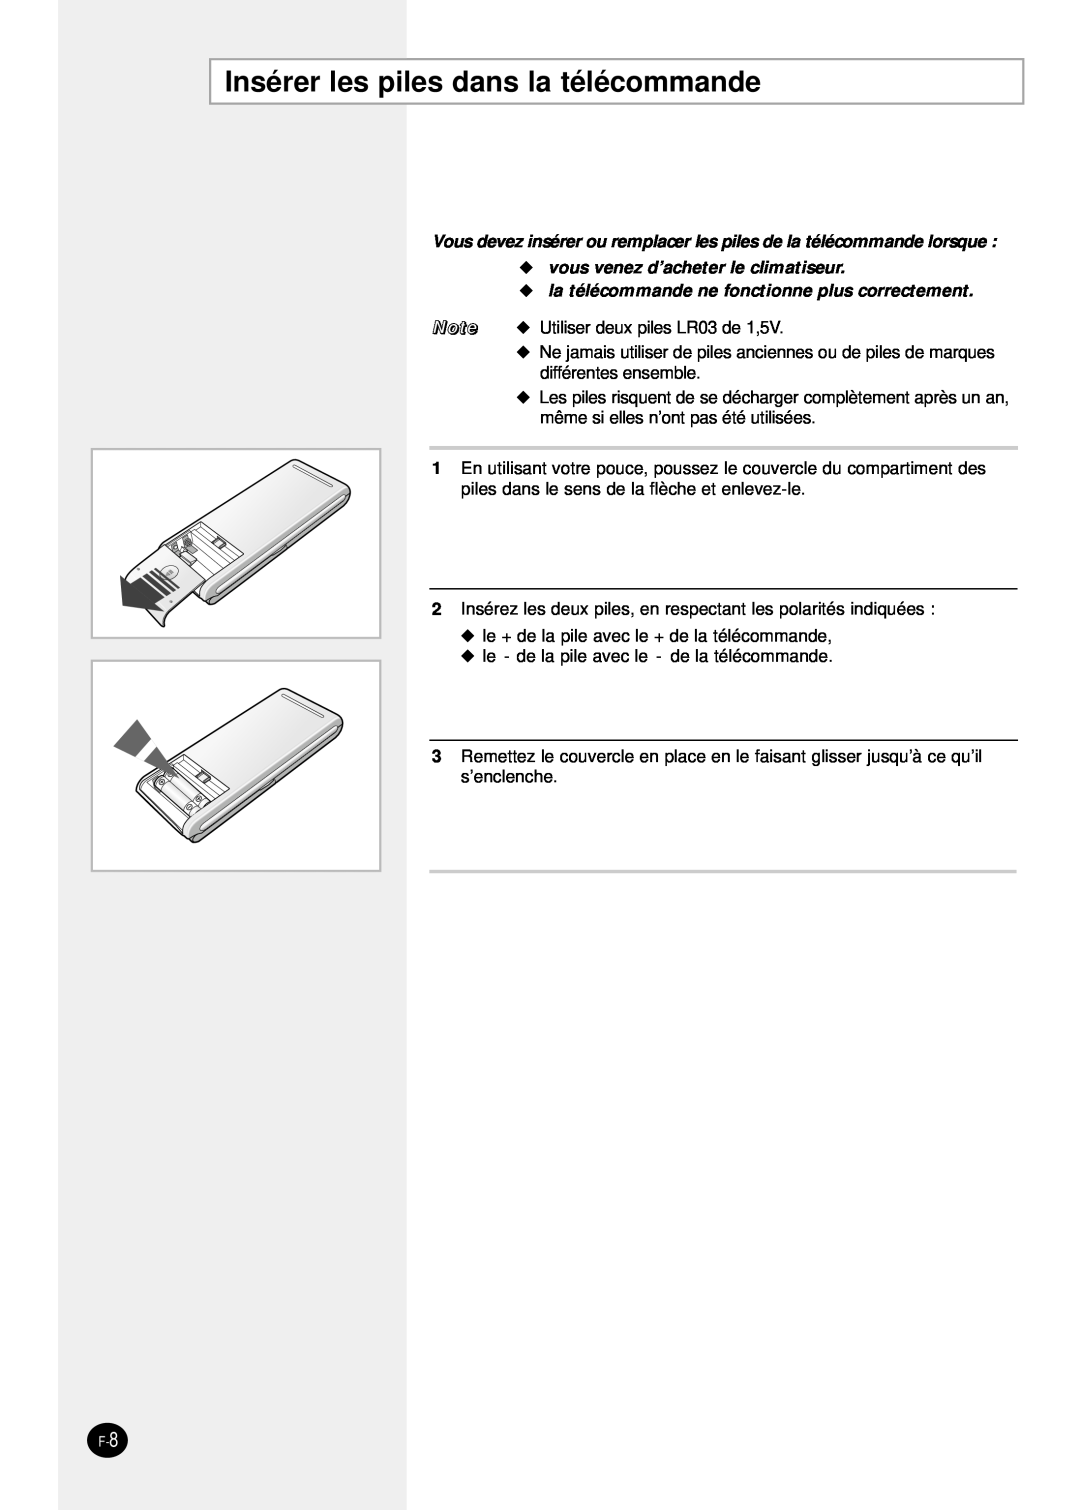 Samsung SH24TP6 manual Insérer les piles dans la télécommande, vous venez d’acheter le climatiseur 